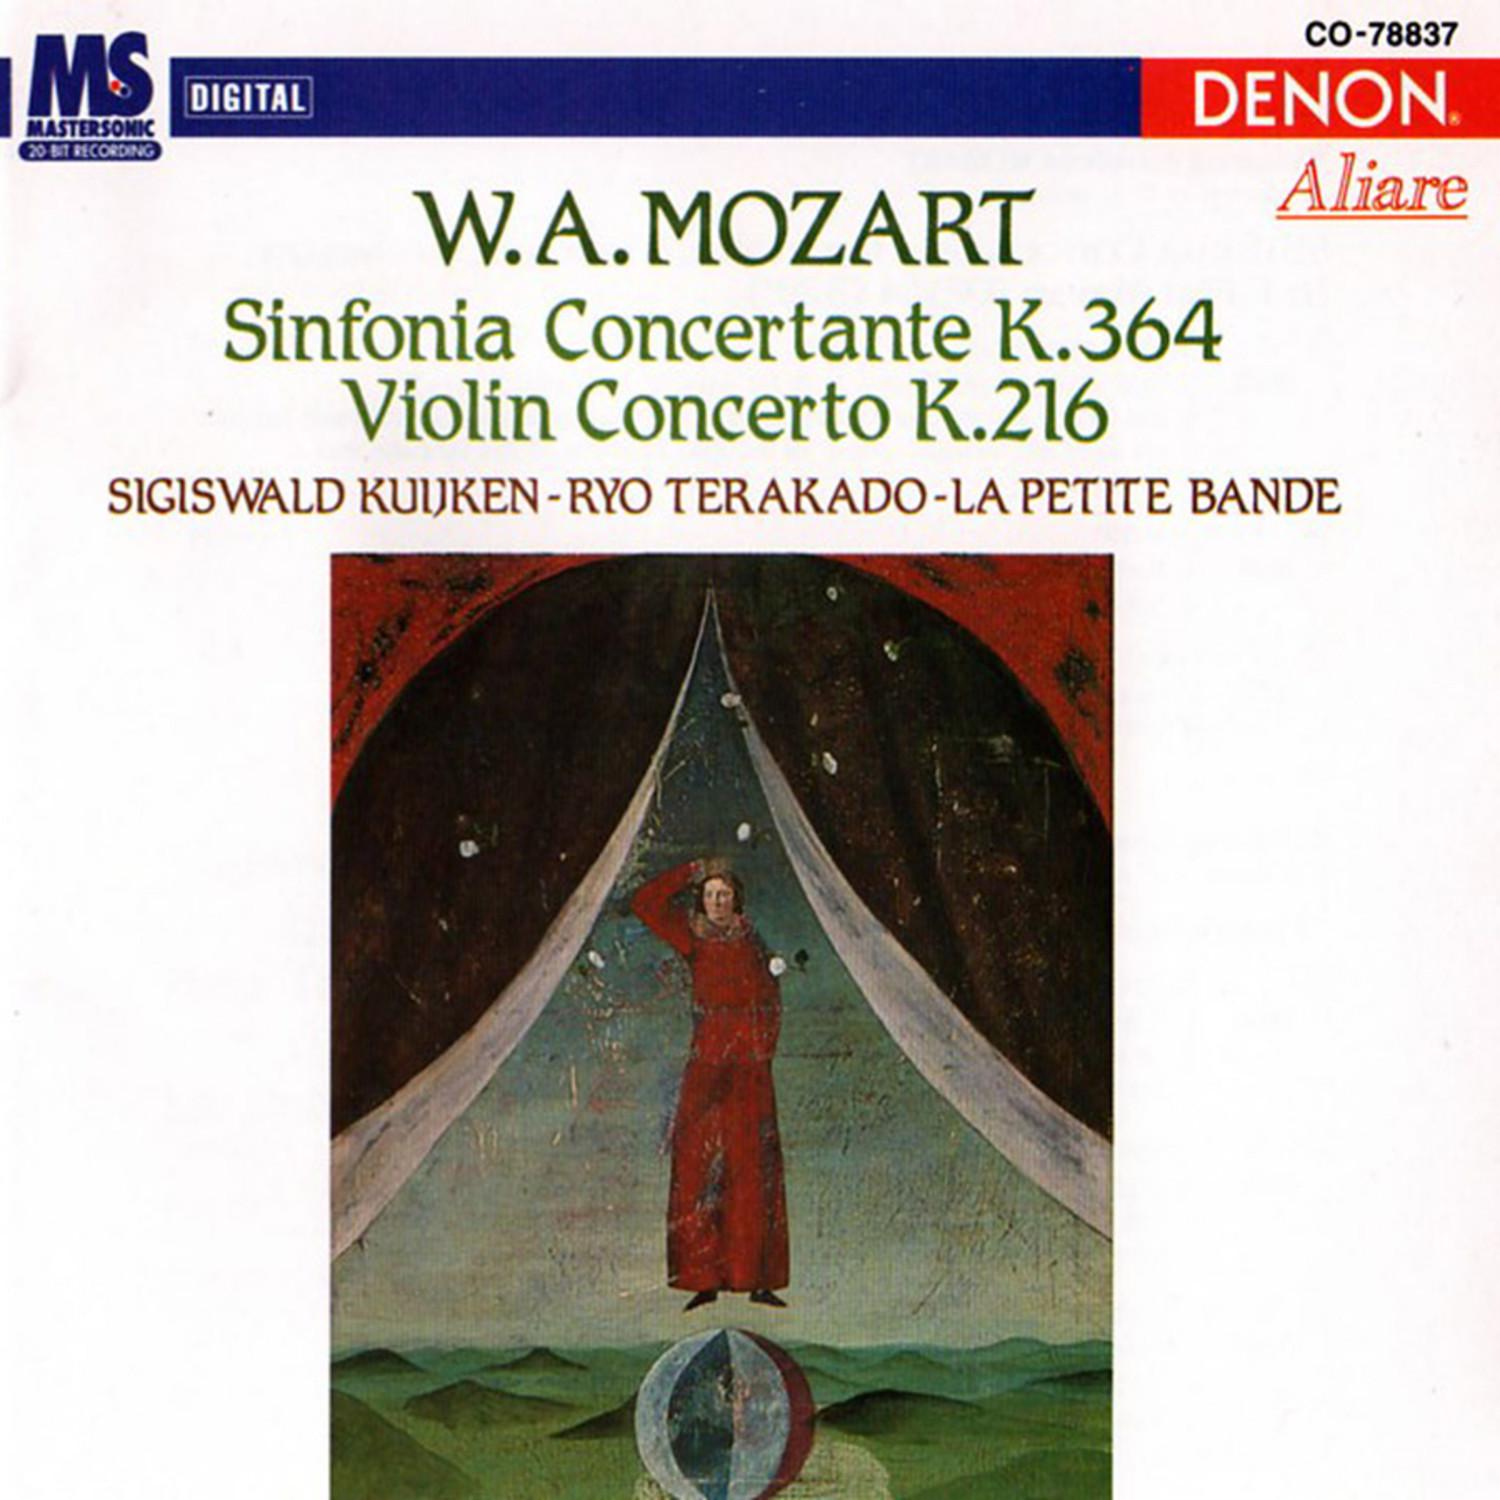 Concerto for Violin & Orchestra in G Major, K. 216: I. Allegro